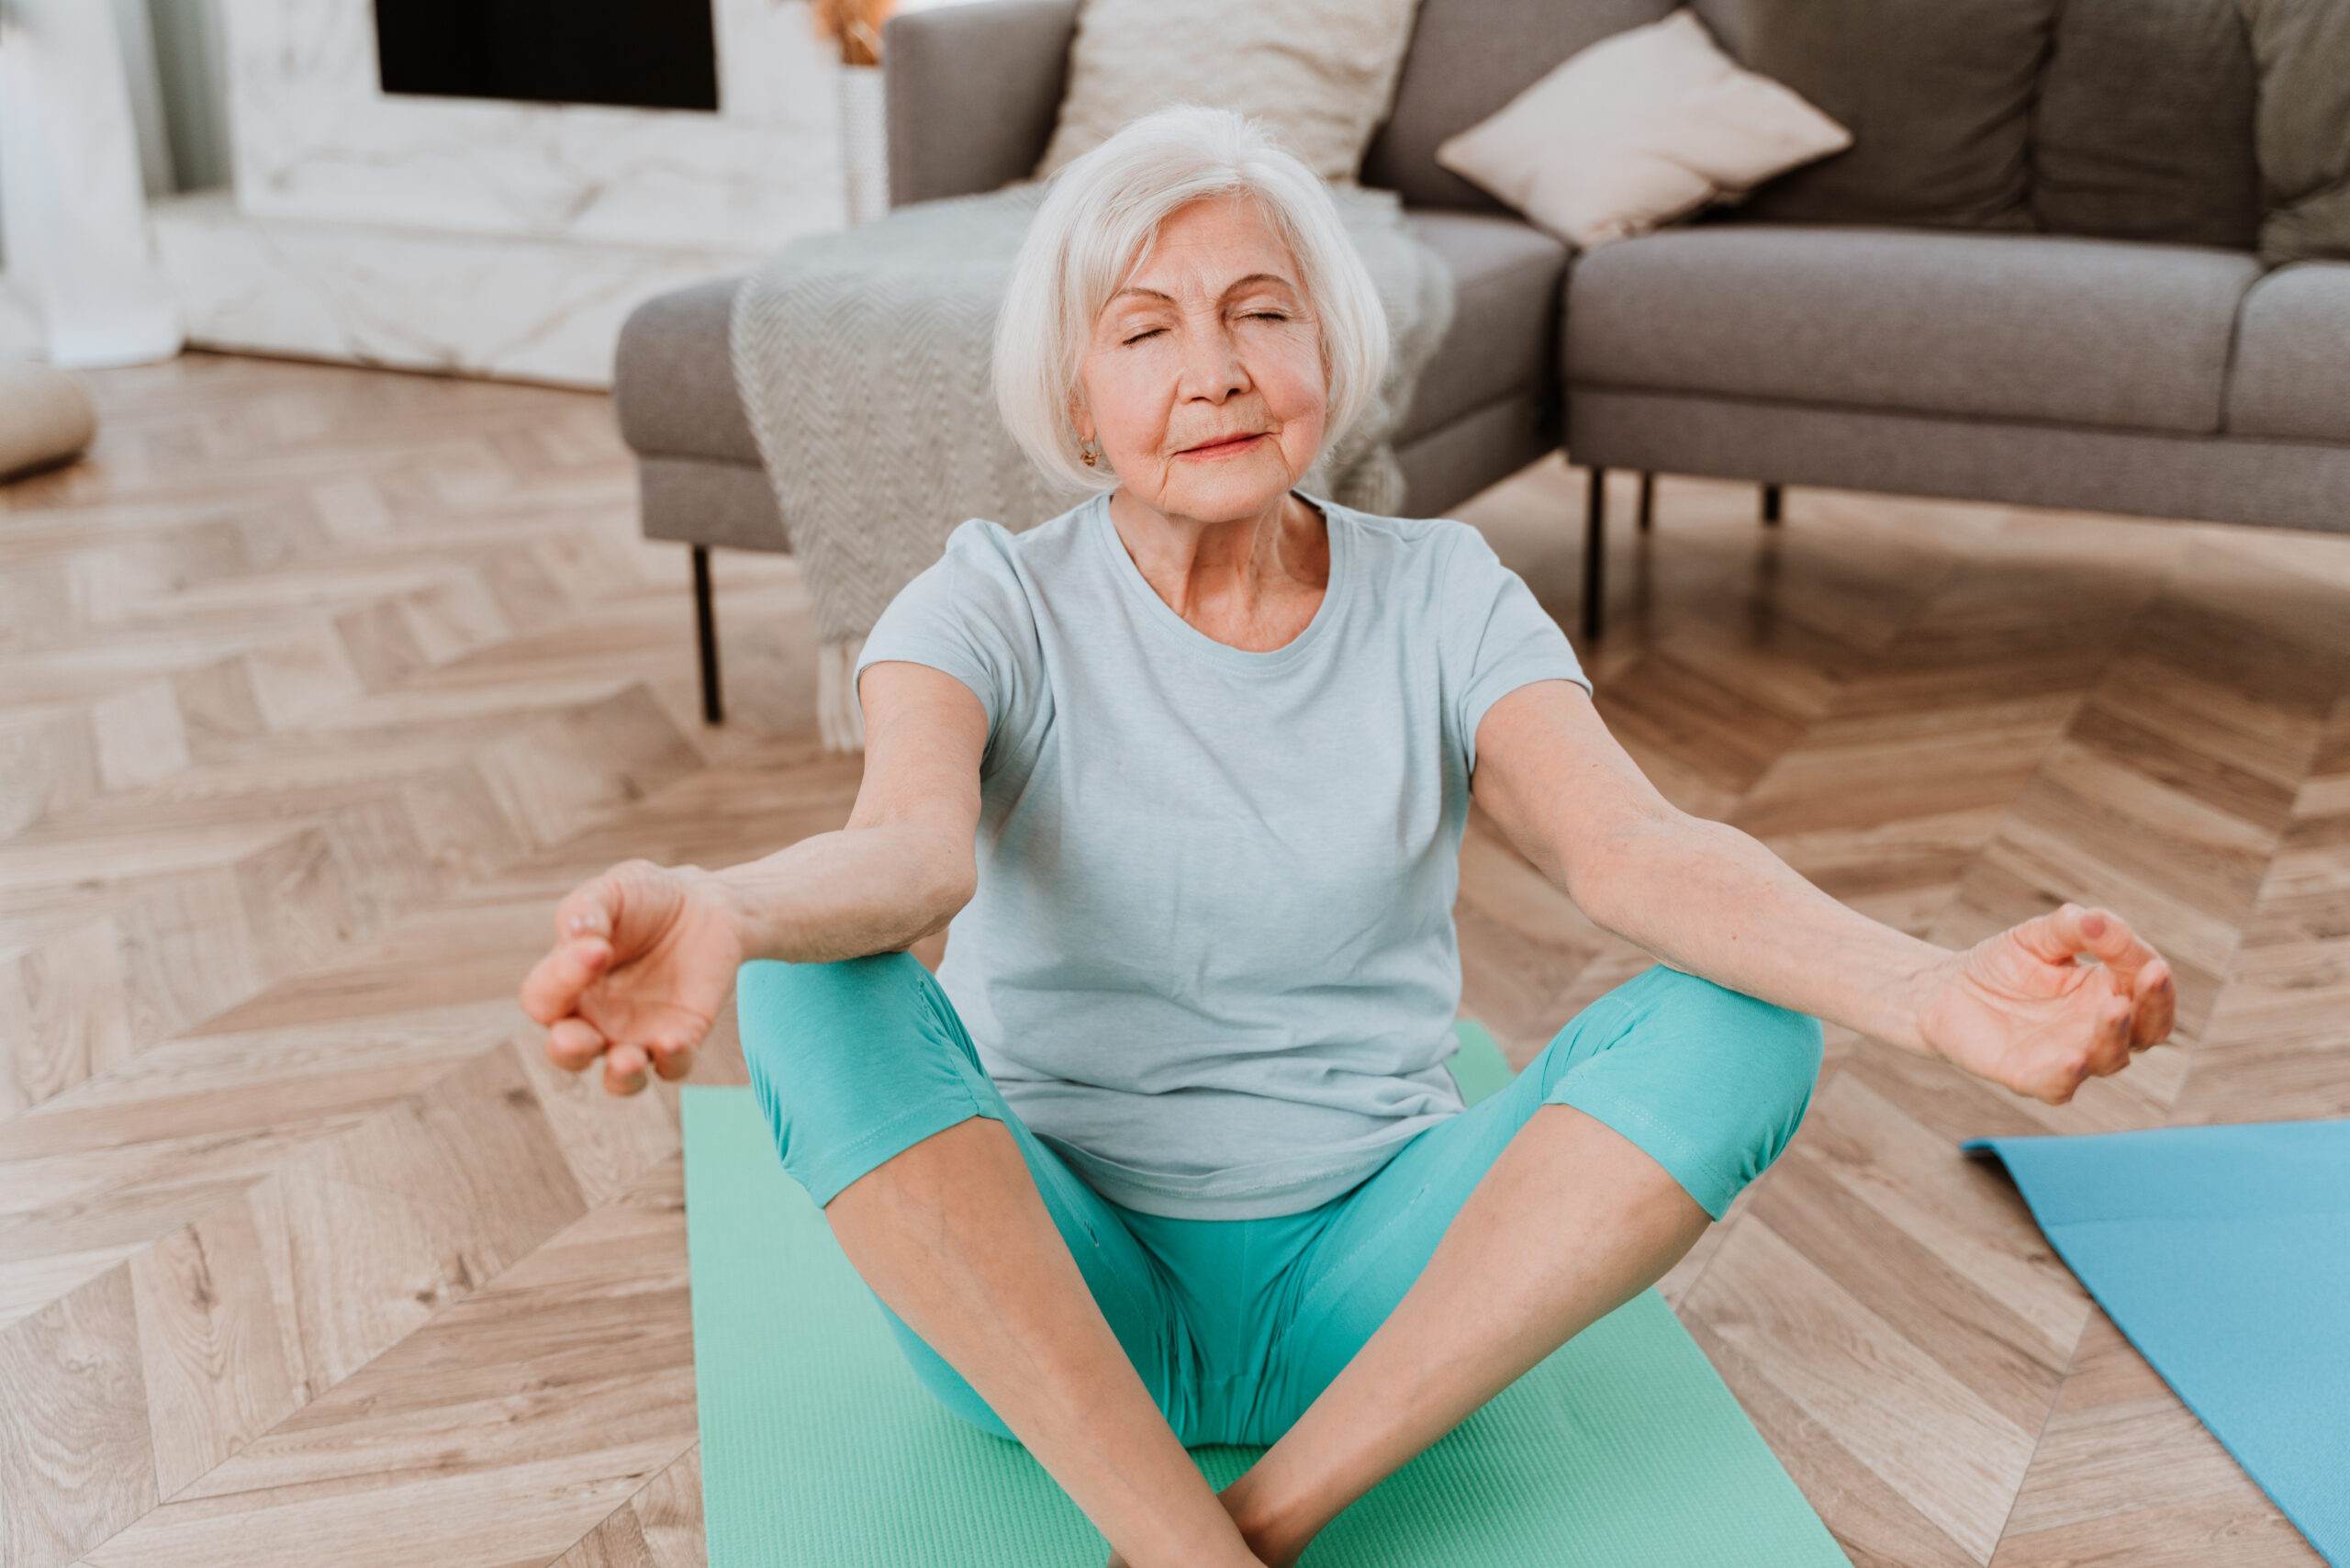 Posturas de yoga ajudam a trazer mais equilíbrio pra vida - Mina